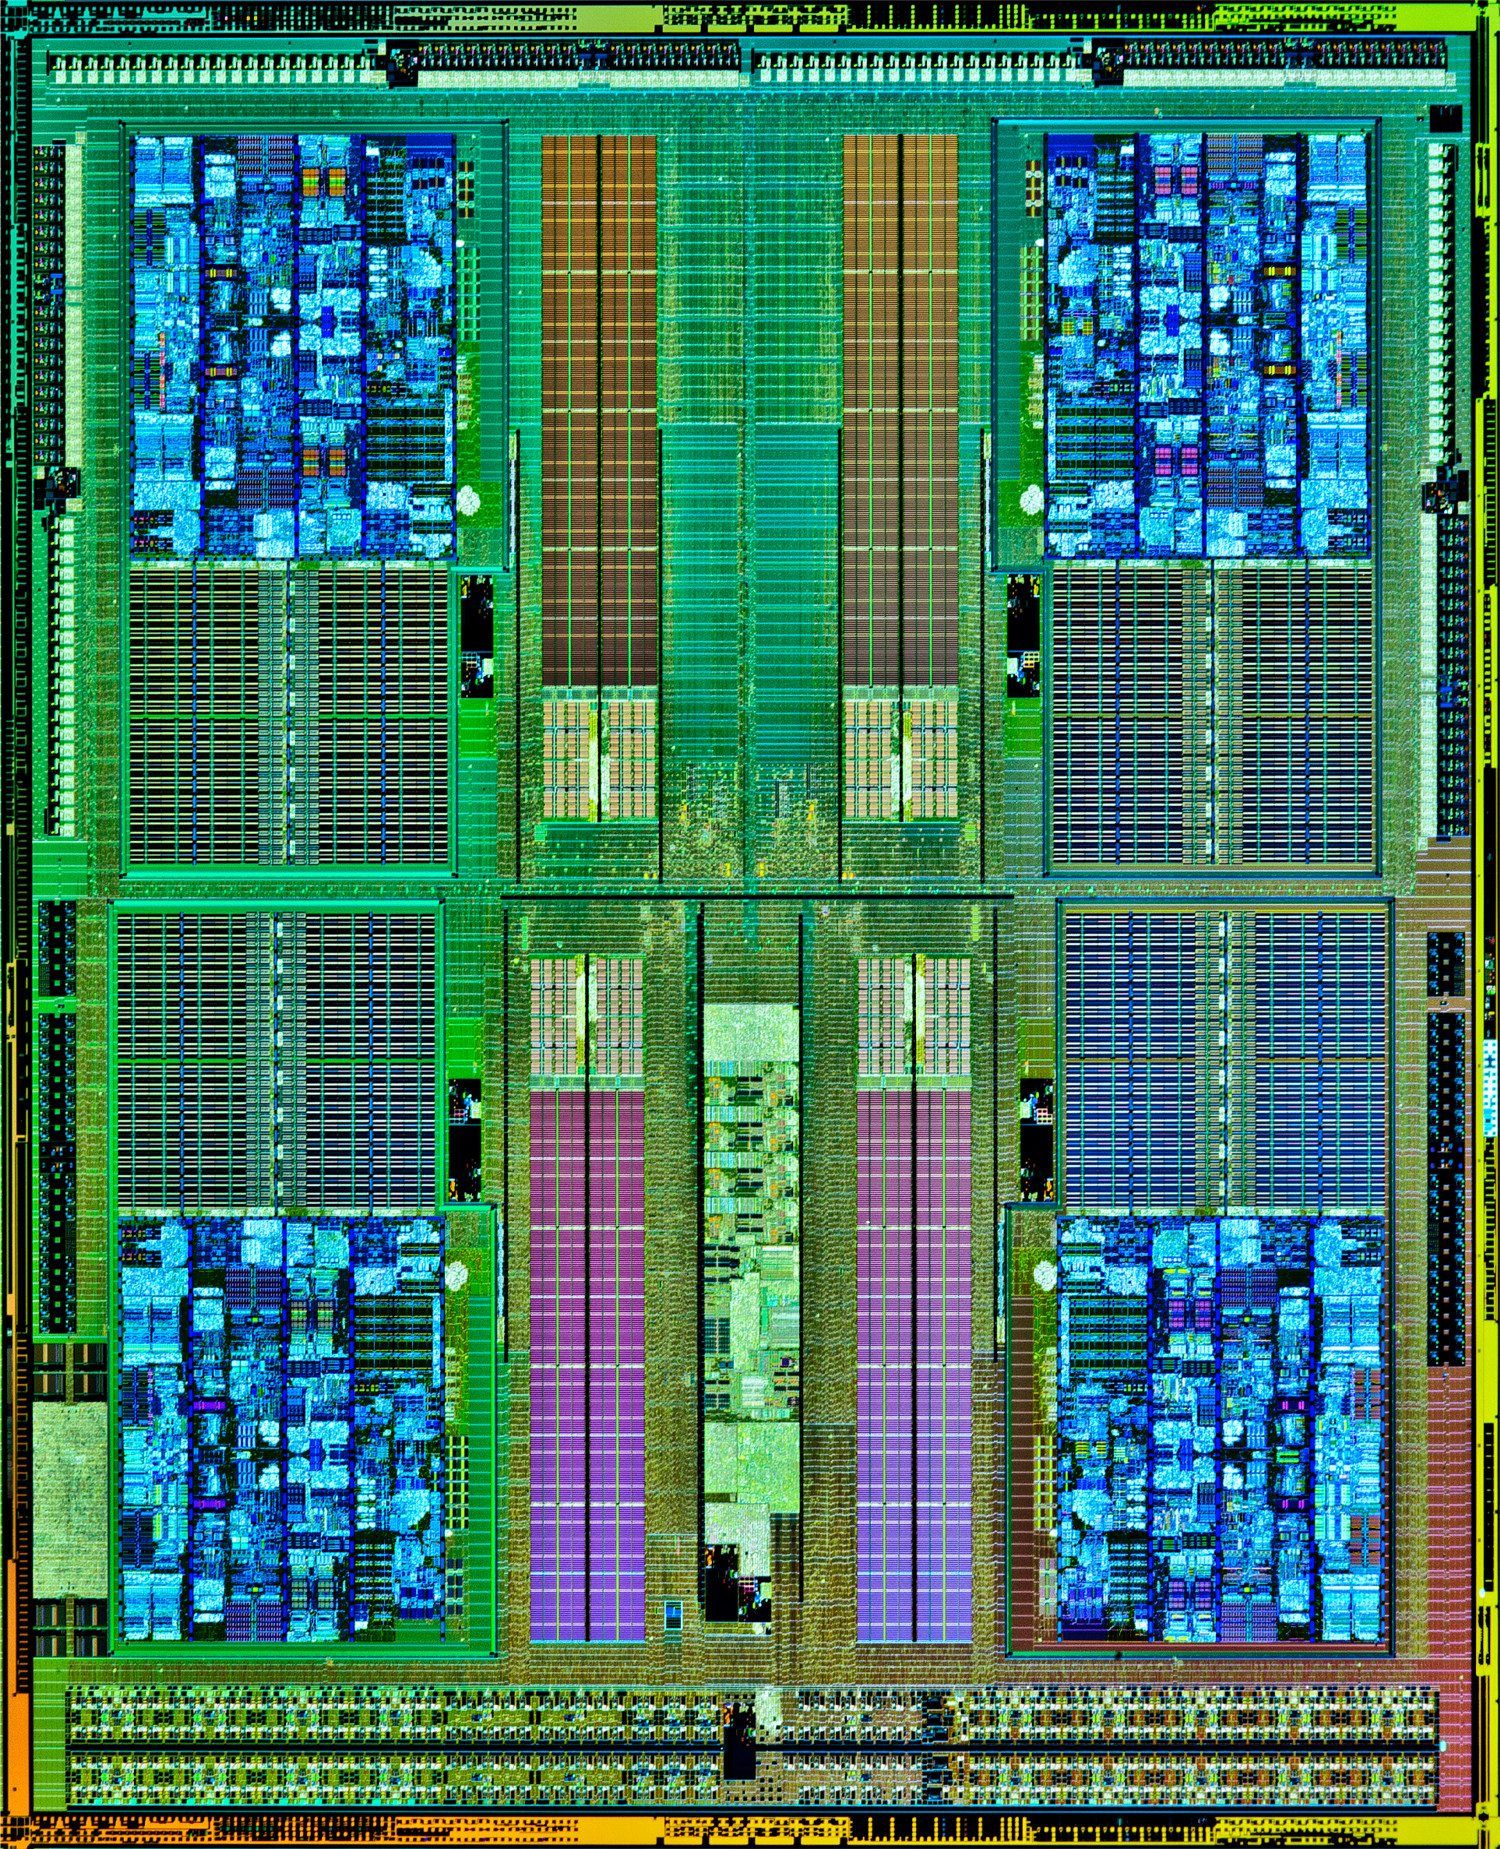 2 процессора в играх. Кристалл процессора fx8350. FX 6300 процессор архитектура. Ядро процессора: Vishera. Архитектура FX 8300.